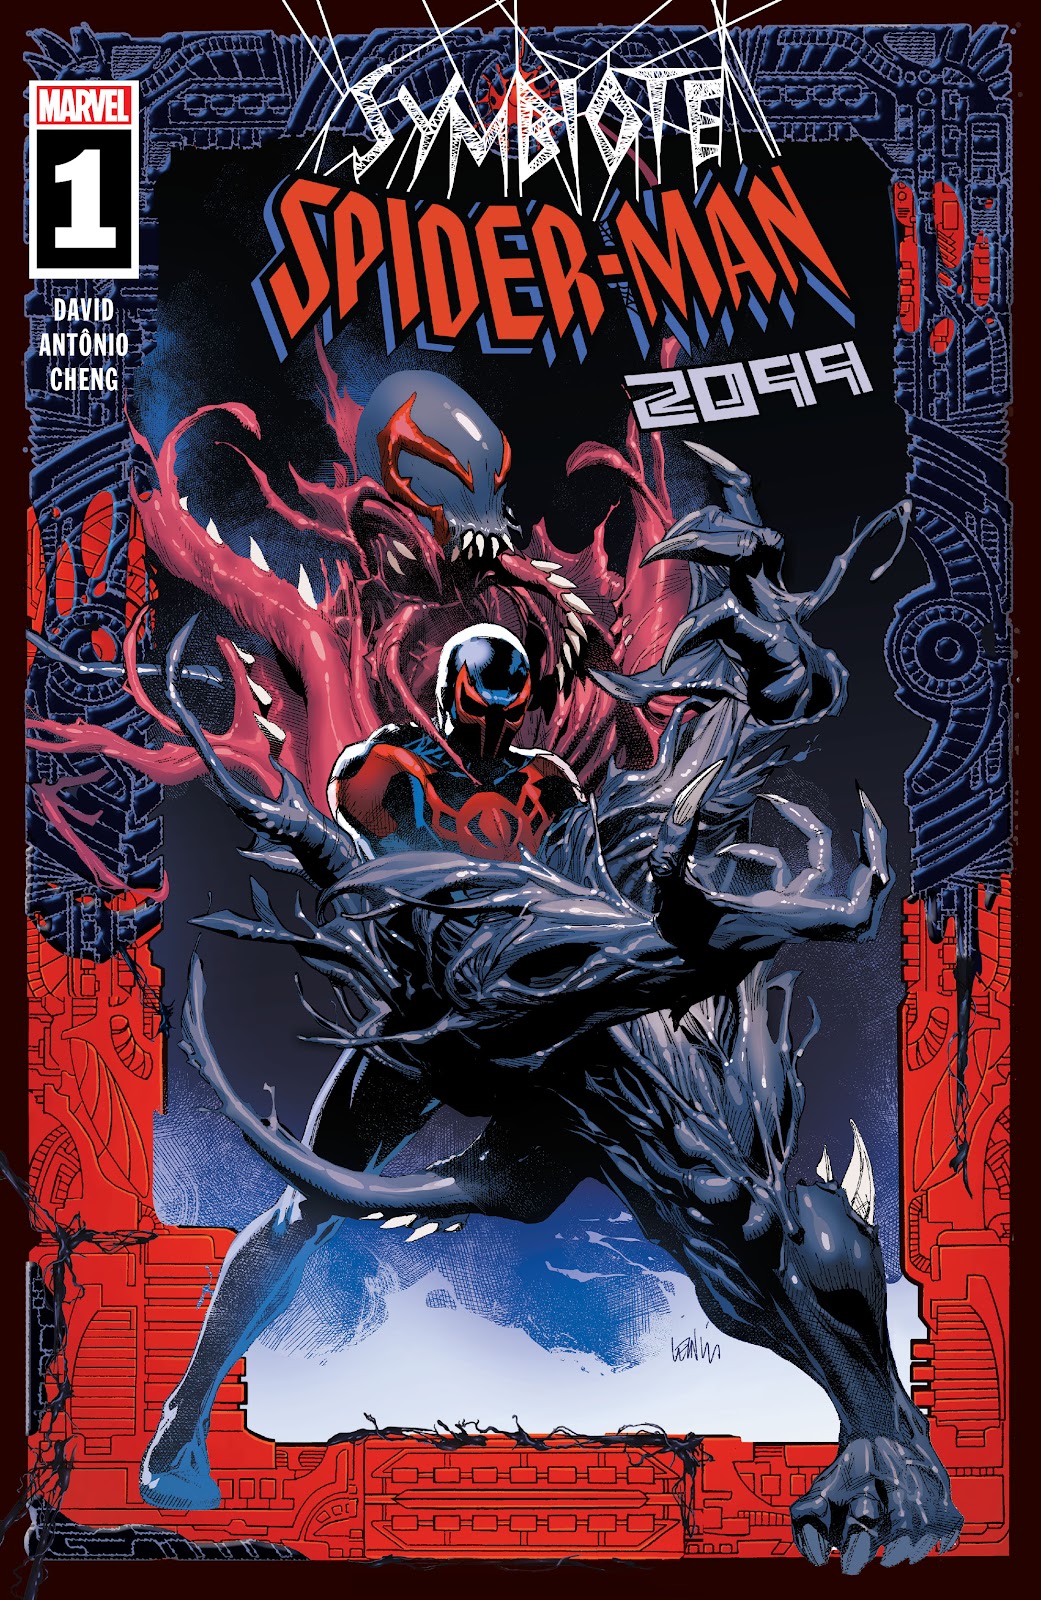 Symbiote Spider-Man 2099 issue 1 - Page 1